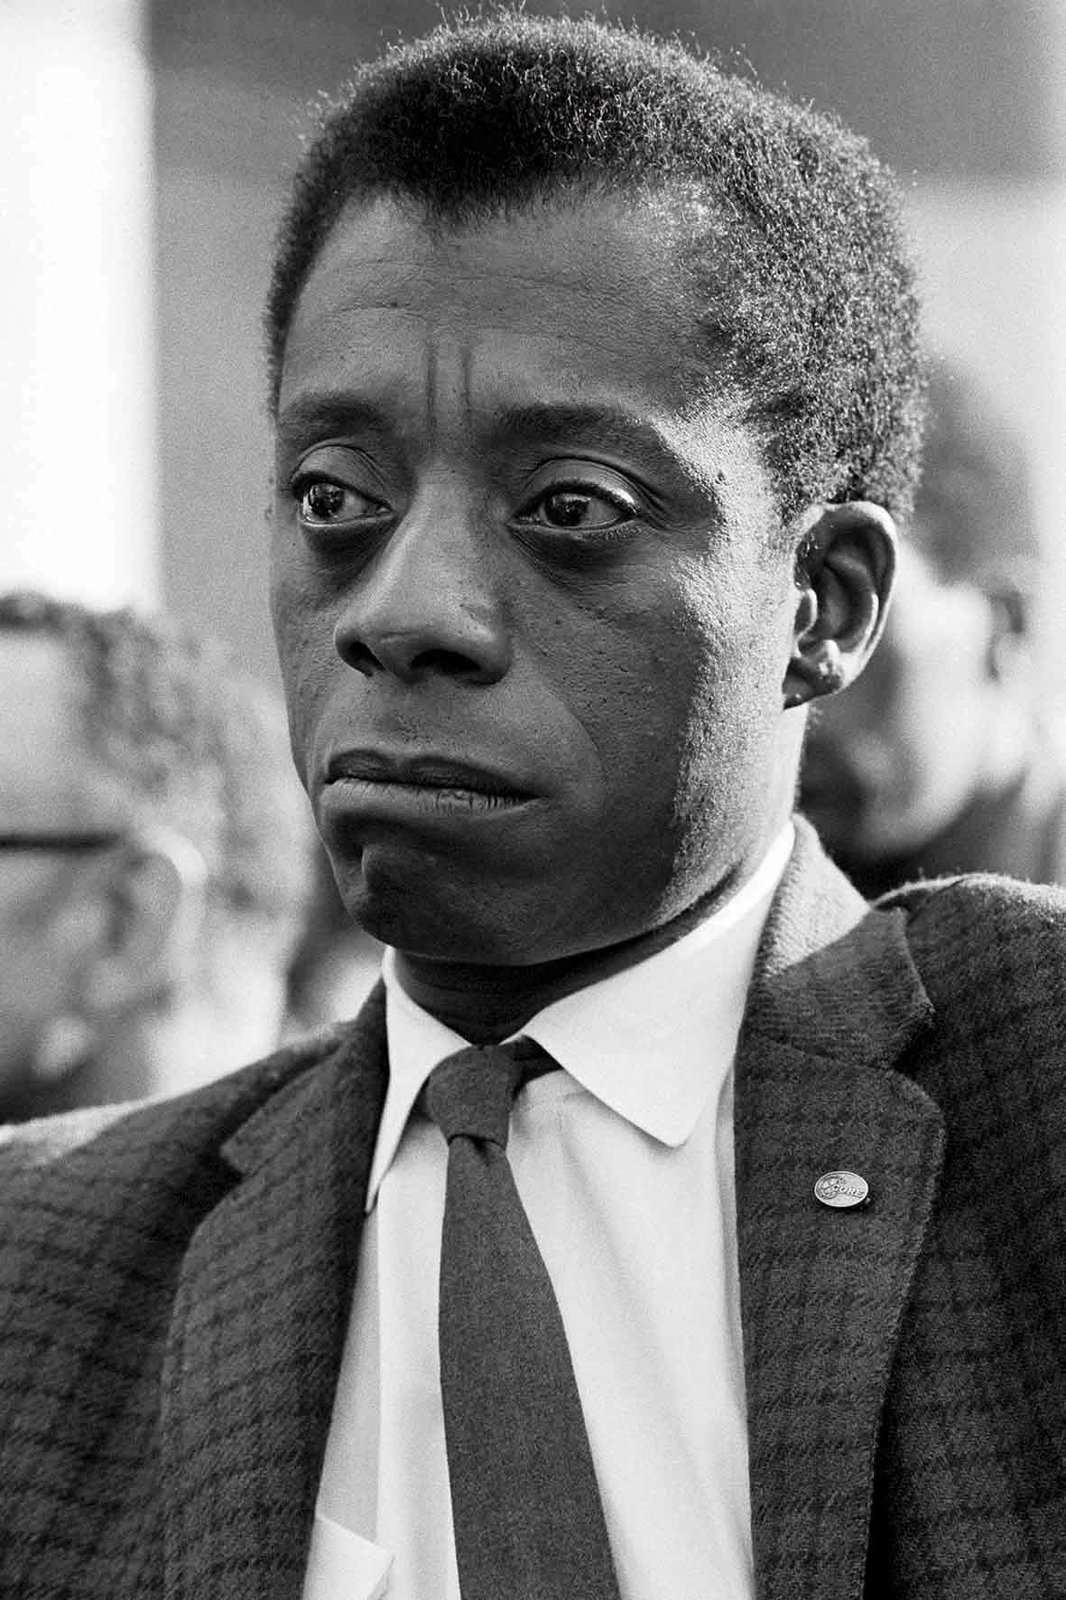 James Baldwin in I am not your Negro